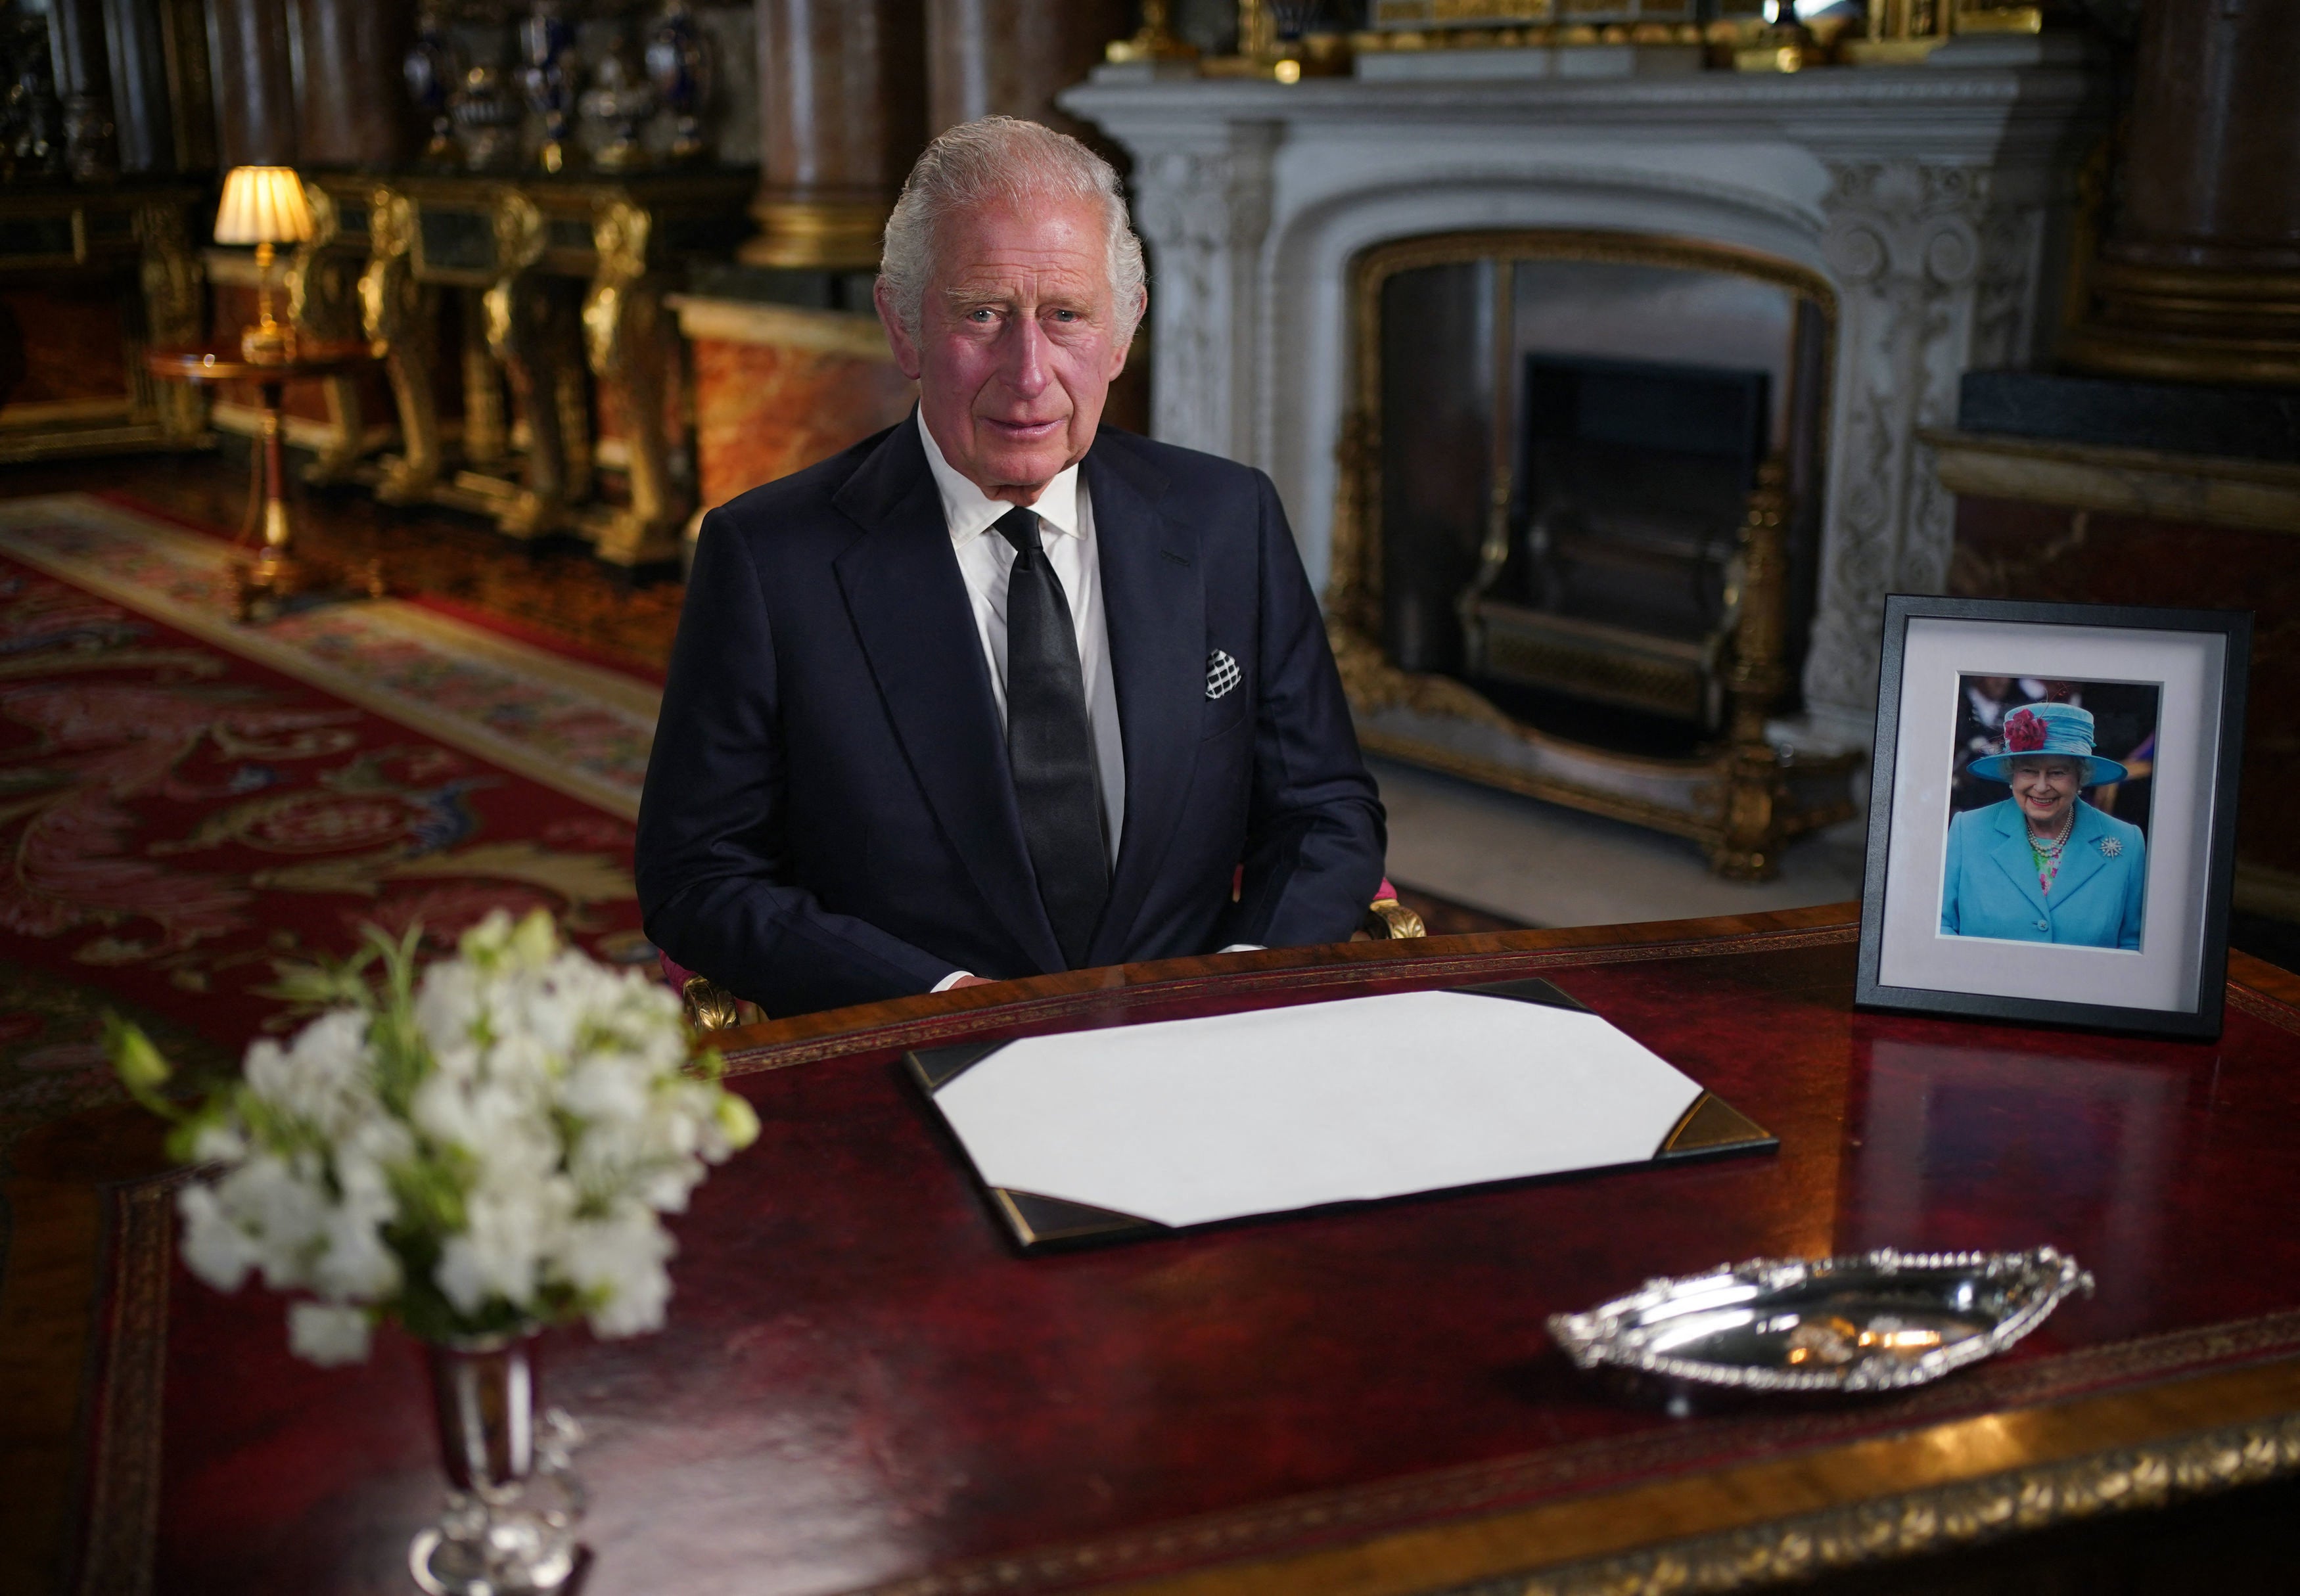 El rey Charles III envía un discurso televisado a la nación y la Commonwealth desde el Salón Blue Drawing del palacio de Buckingham en Londres, el 9 de septiembre de 2022, un día después de la muerte de su madre